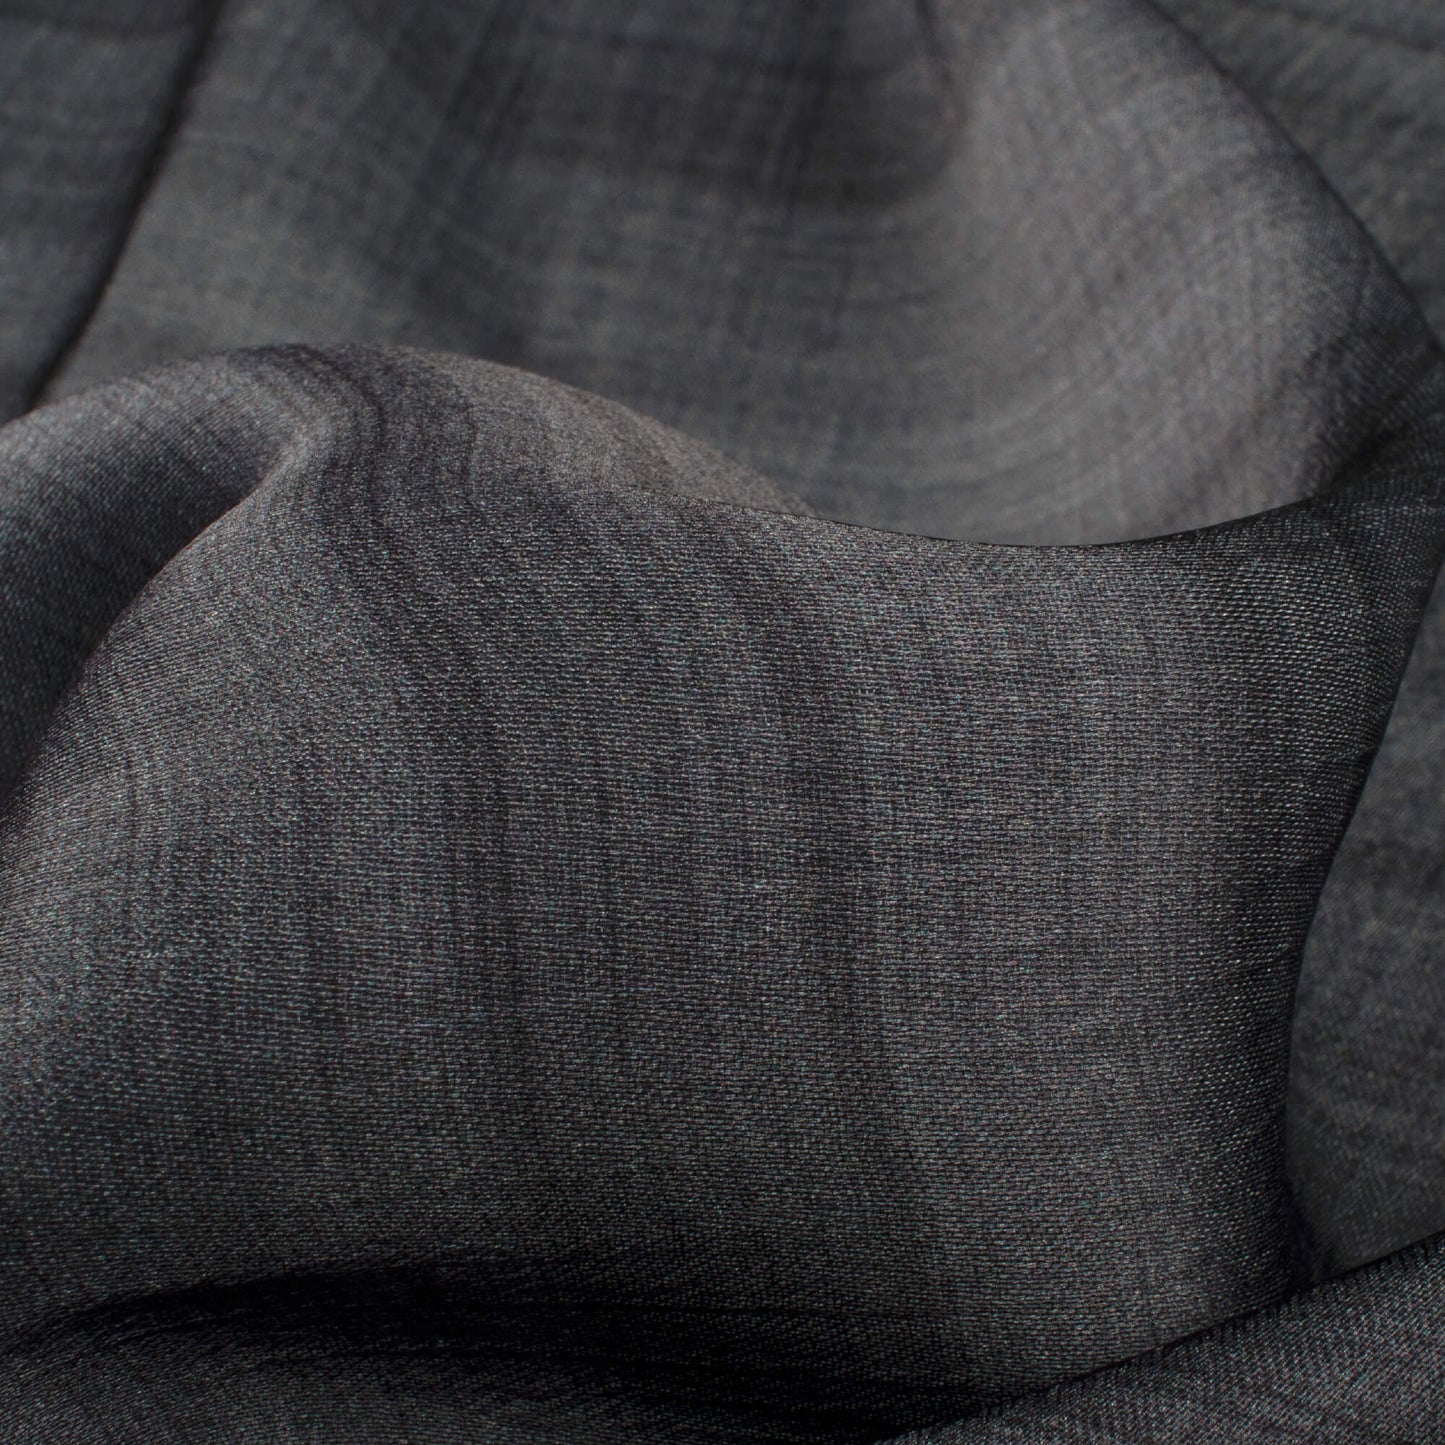 Lava Grey Texture Pattern Digital Print Chiffon Satin Fabric